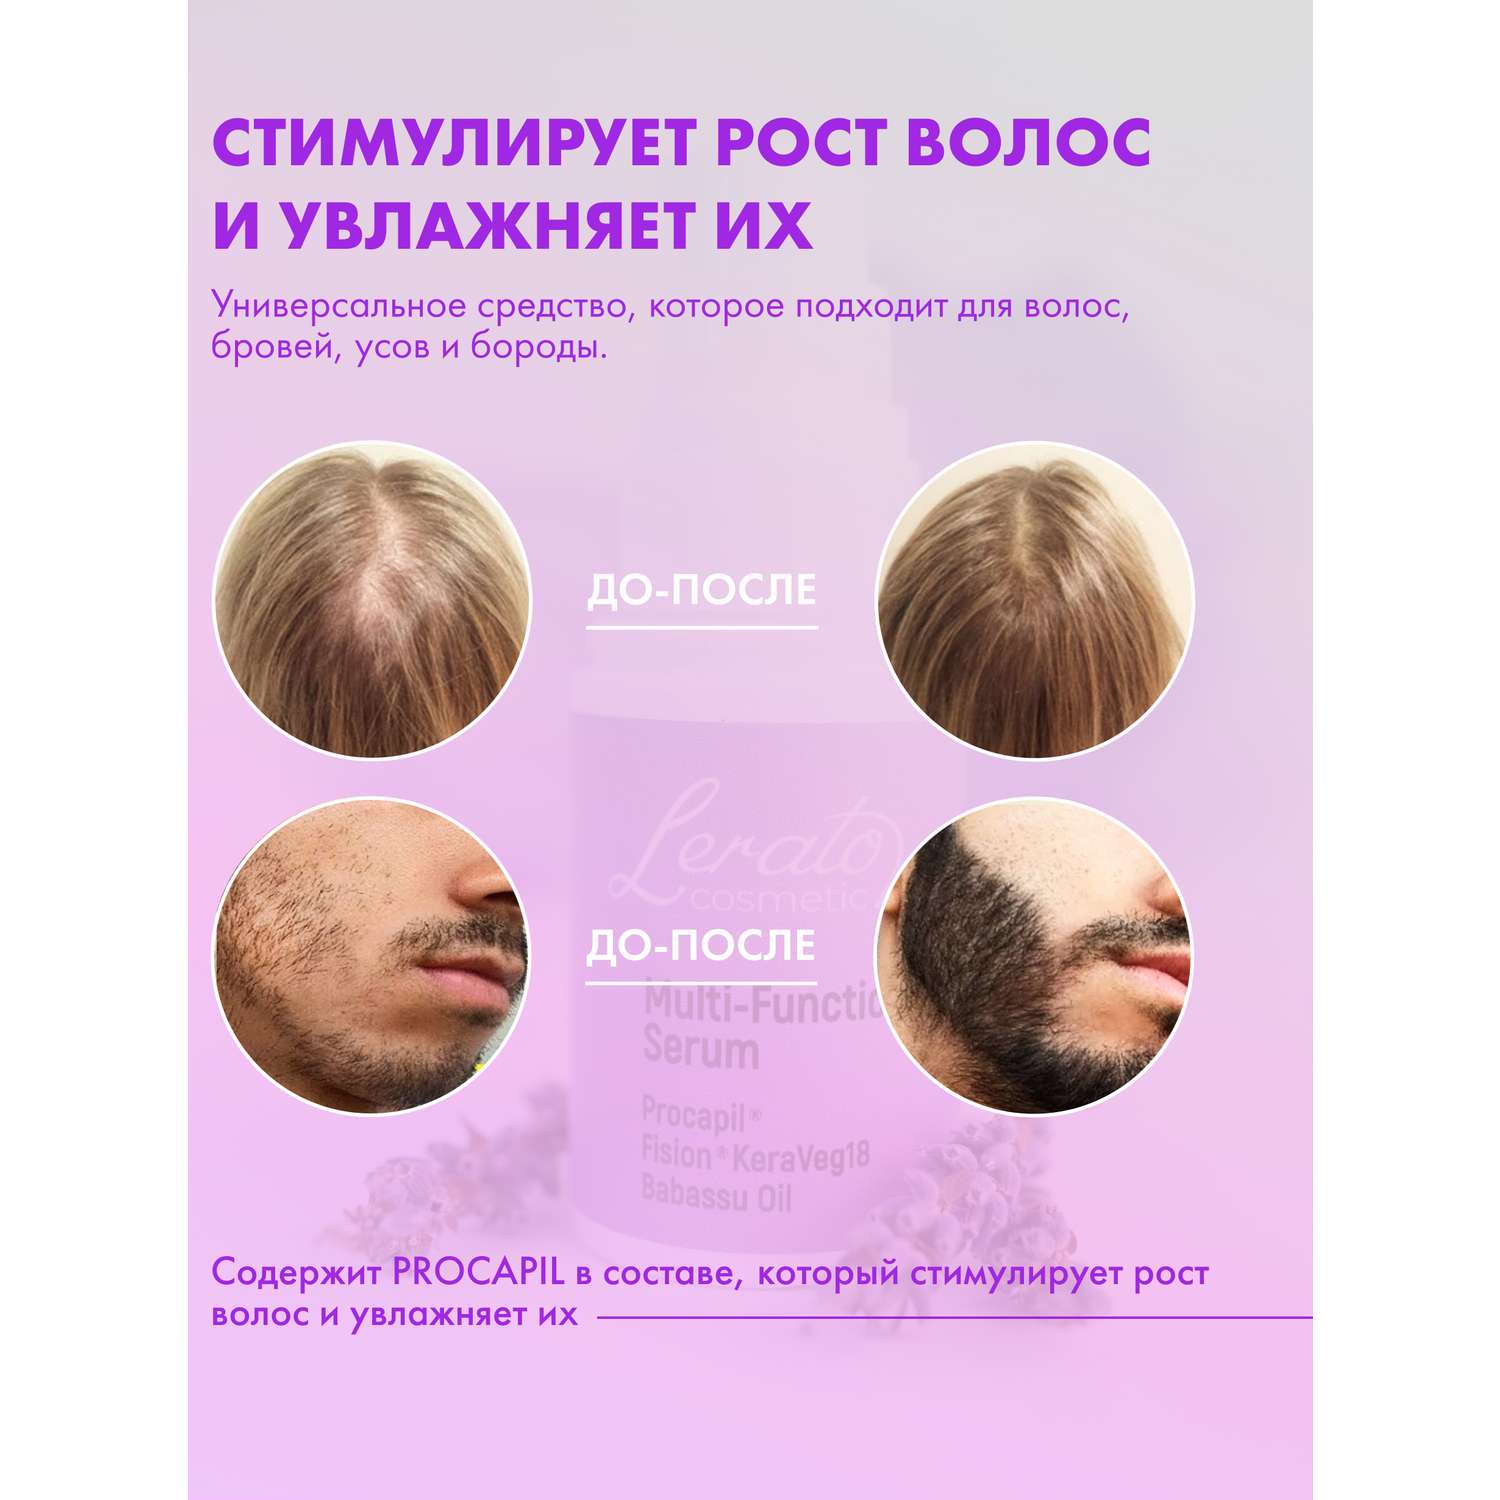 Сыворотка Lerato Cosmetic для стимулирования роста волос Multi Function Serum 30 мл - фото 2